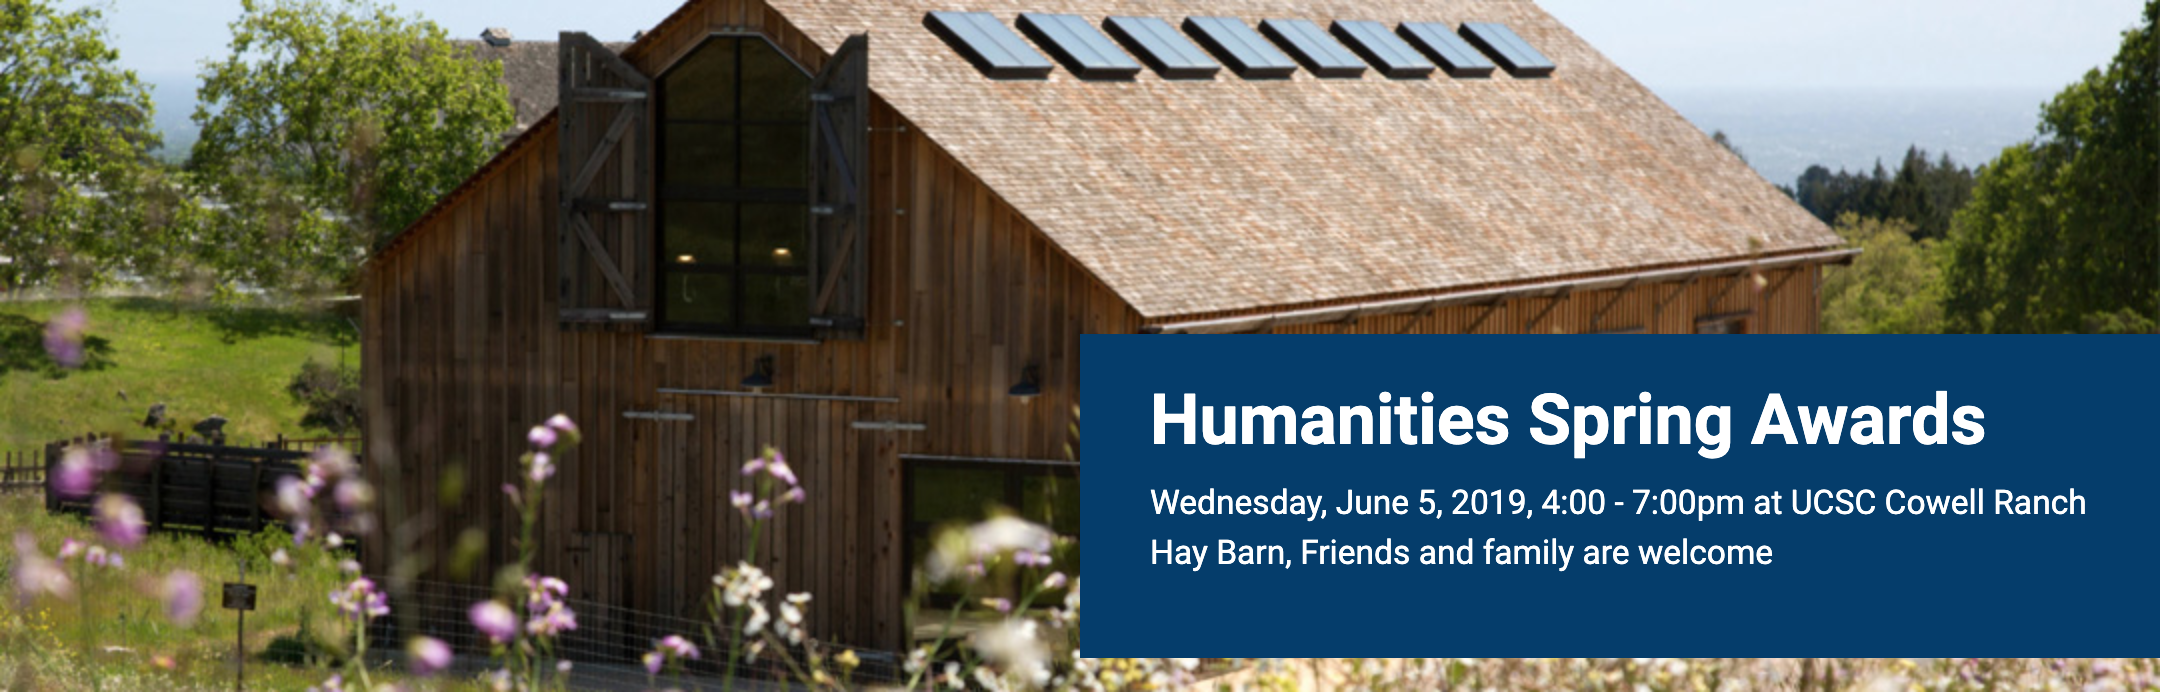 Humanities Spring Awards at the Hay Barn